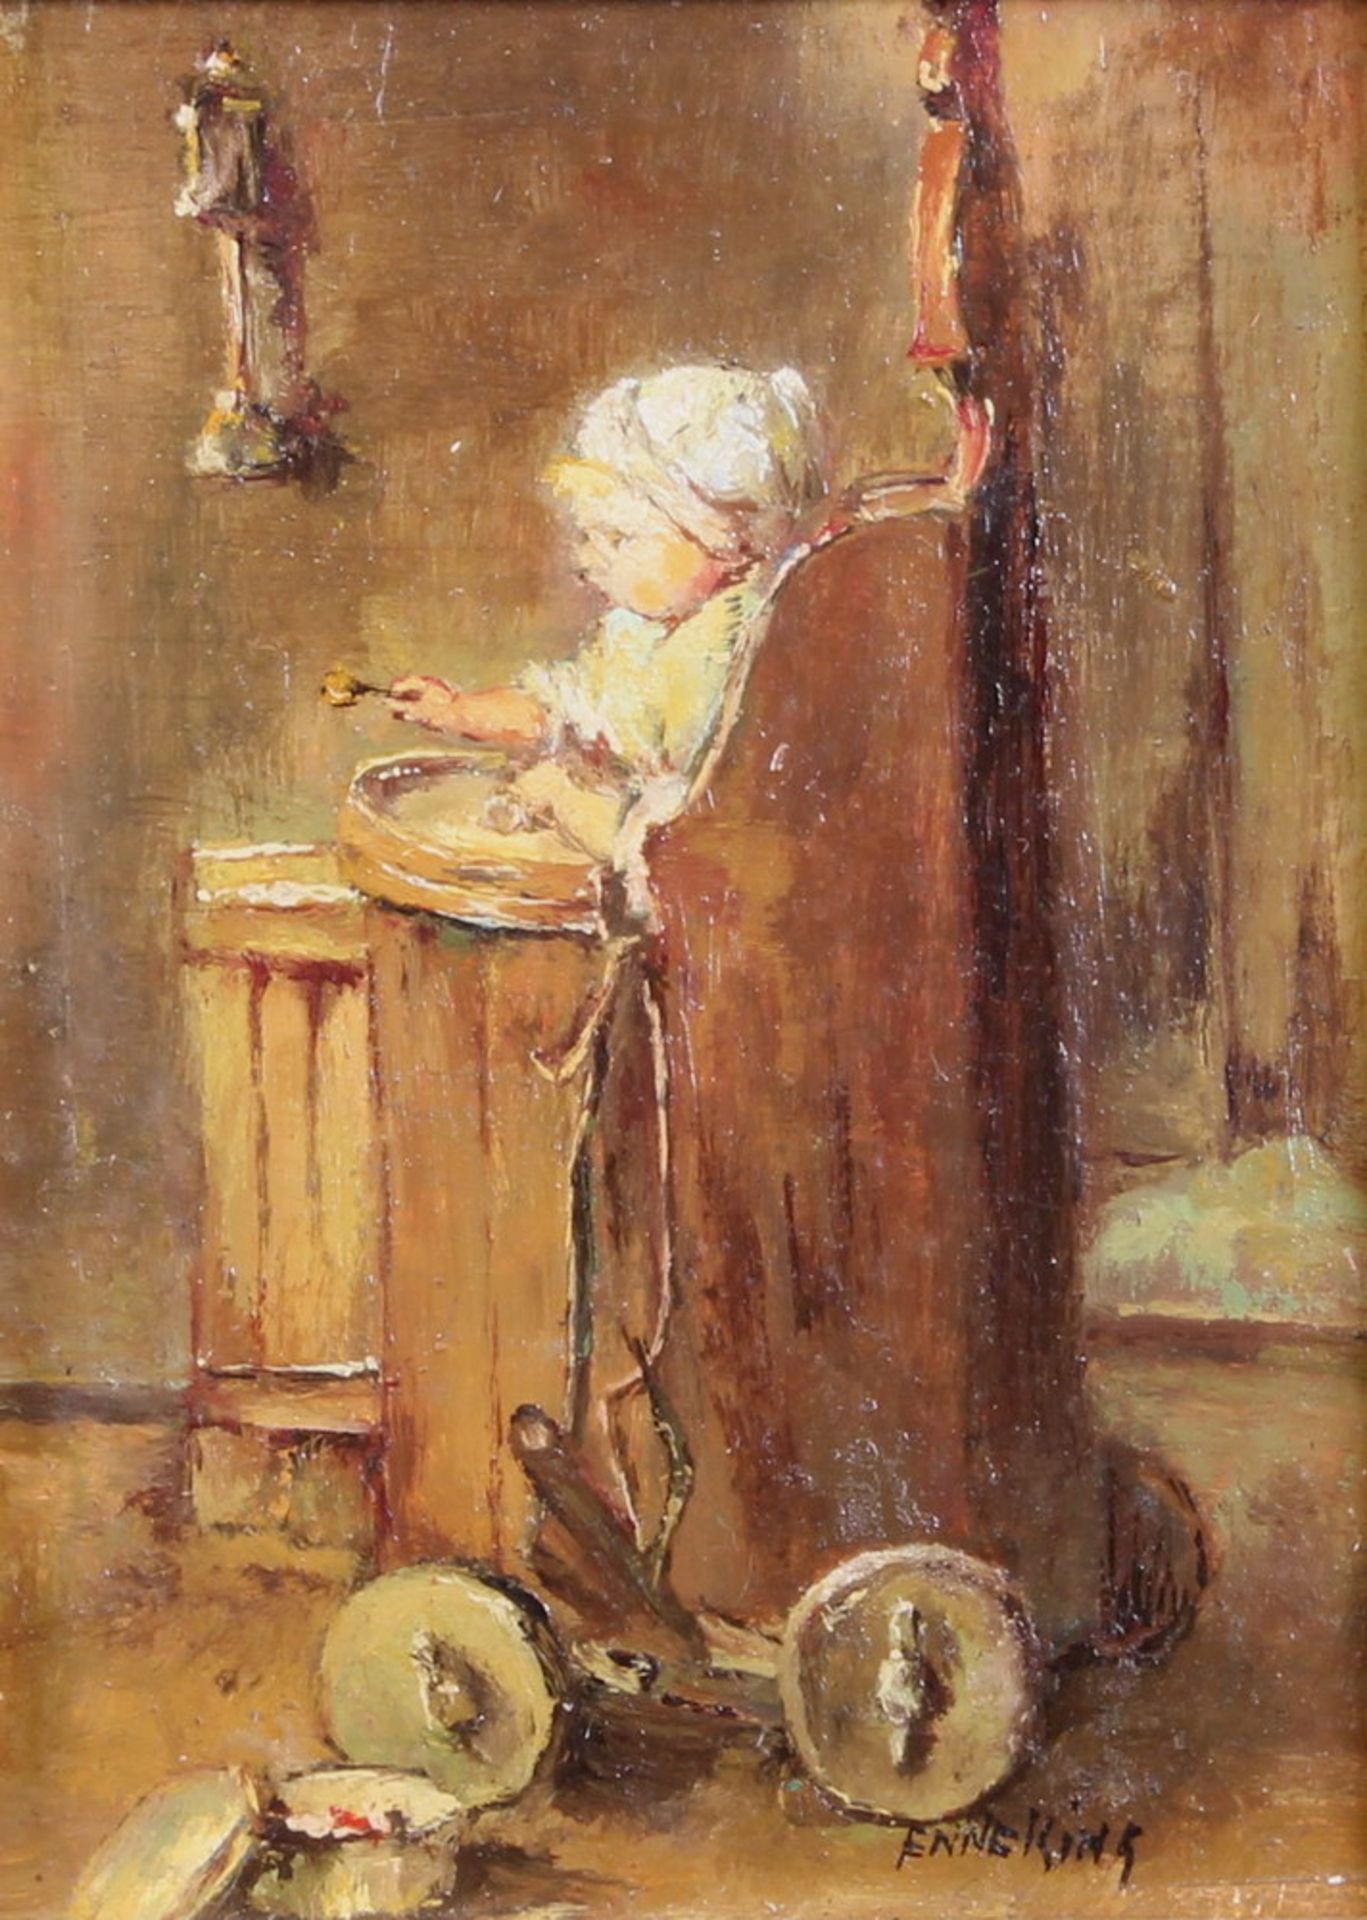 Enneking, Wilhelmus Joseph (geb. 1933), "Kleinkind in Kinderwagen", Öl auf Holz, signiert unten